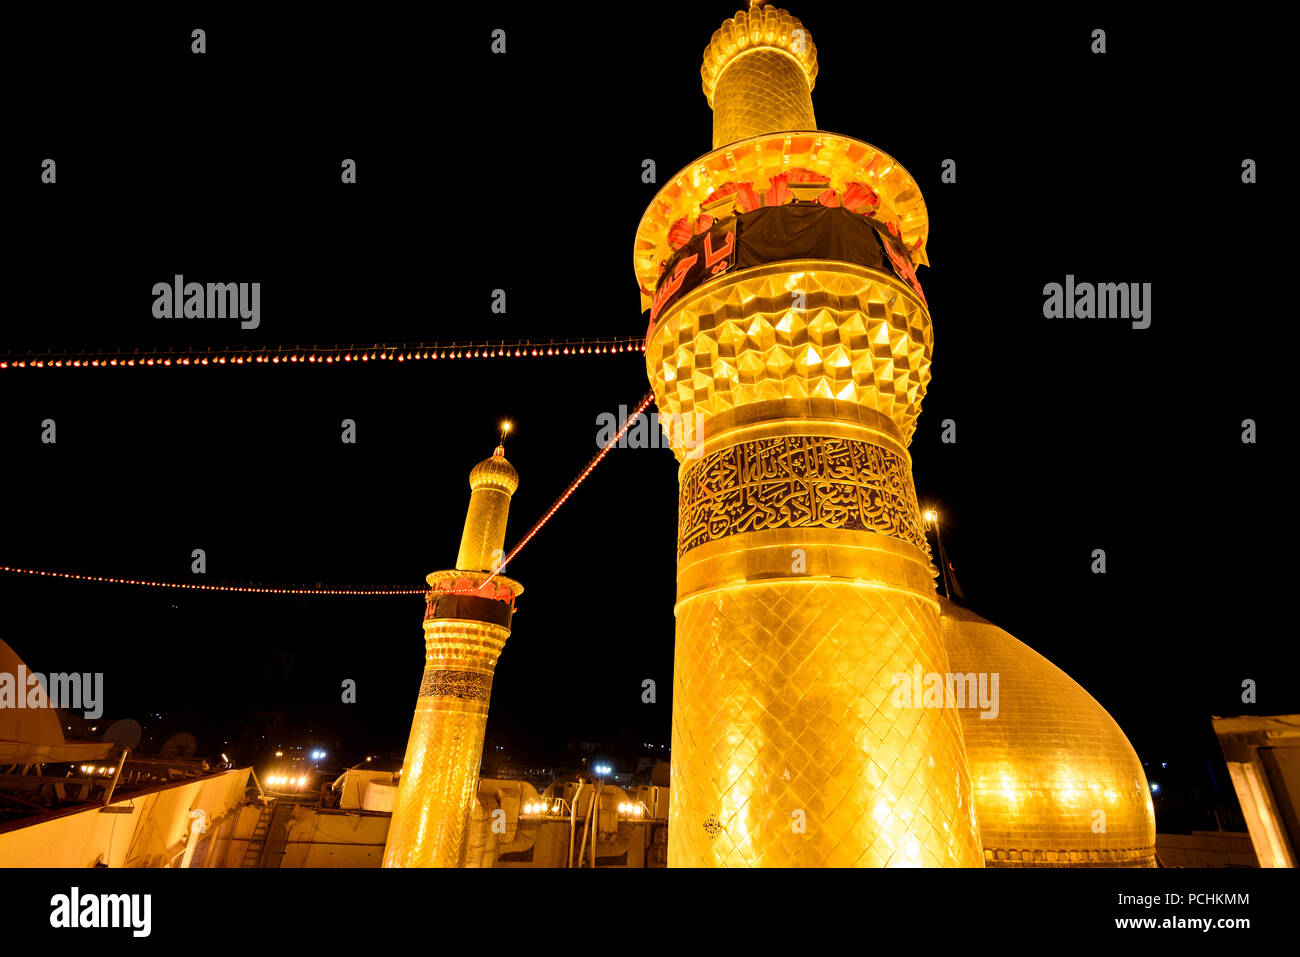 Holy shrine of Imam Hussain ,Karbala ,Iraq Stock Photo - Alamy